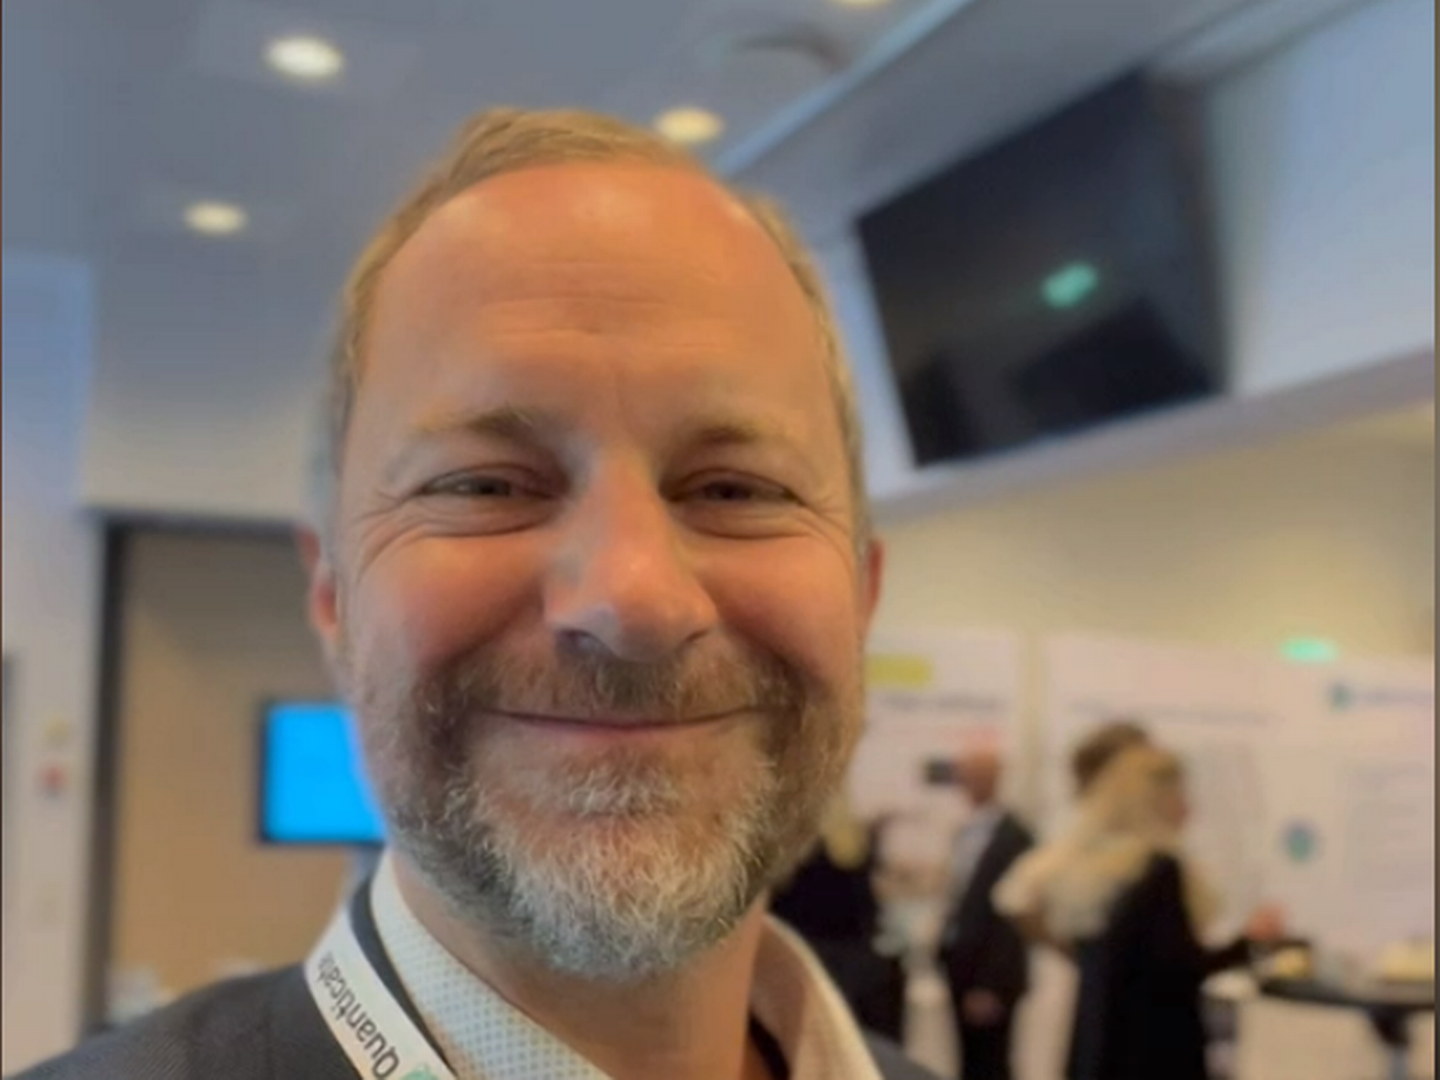 SMILER BREDT: Medisinsk direktør i Coegin Pharma, John Zibert, smiler bredt før han skal annonsere resultatene fra den nye COAK-studien. | Foto: Skjermdump, Coegin Pharmas LinkedIn